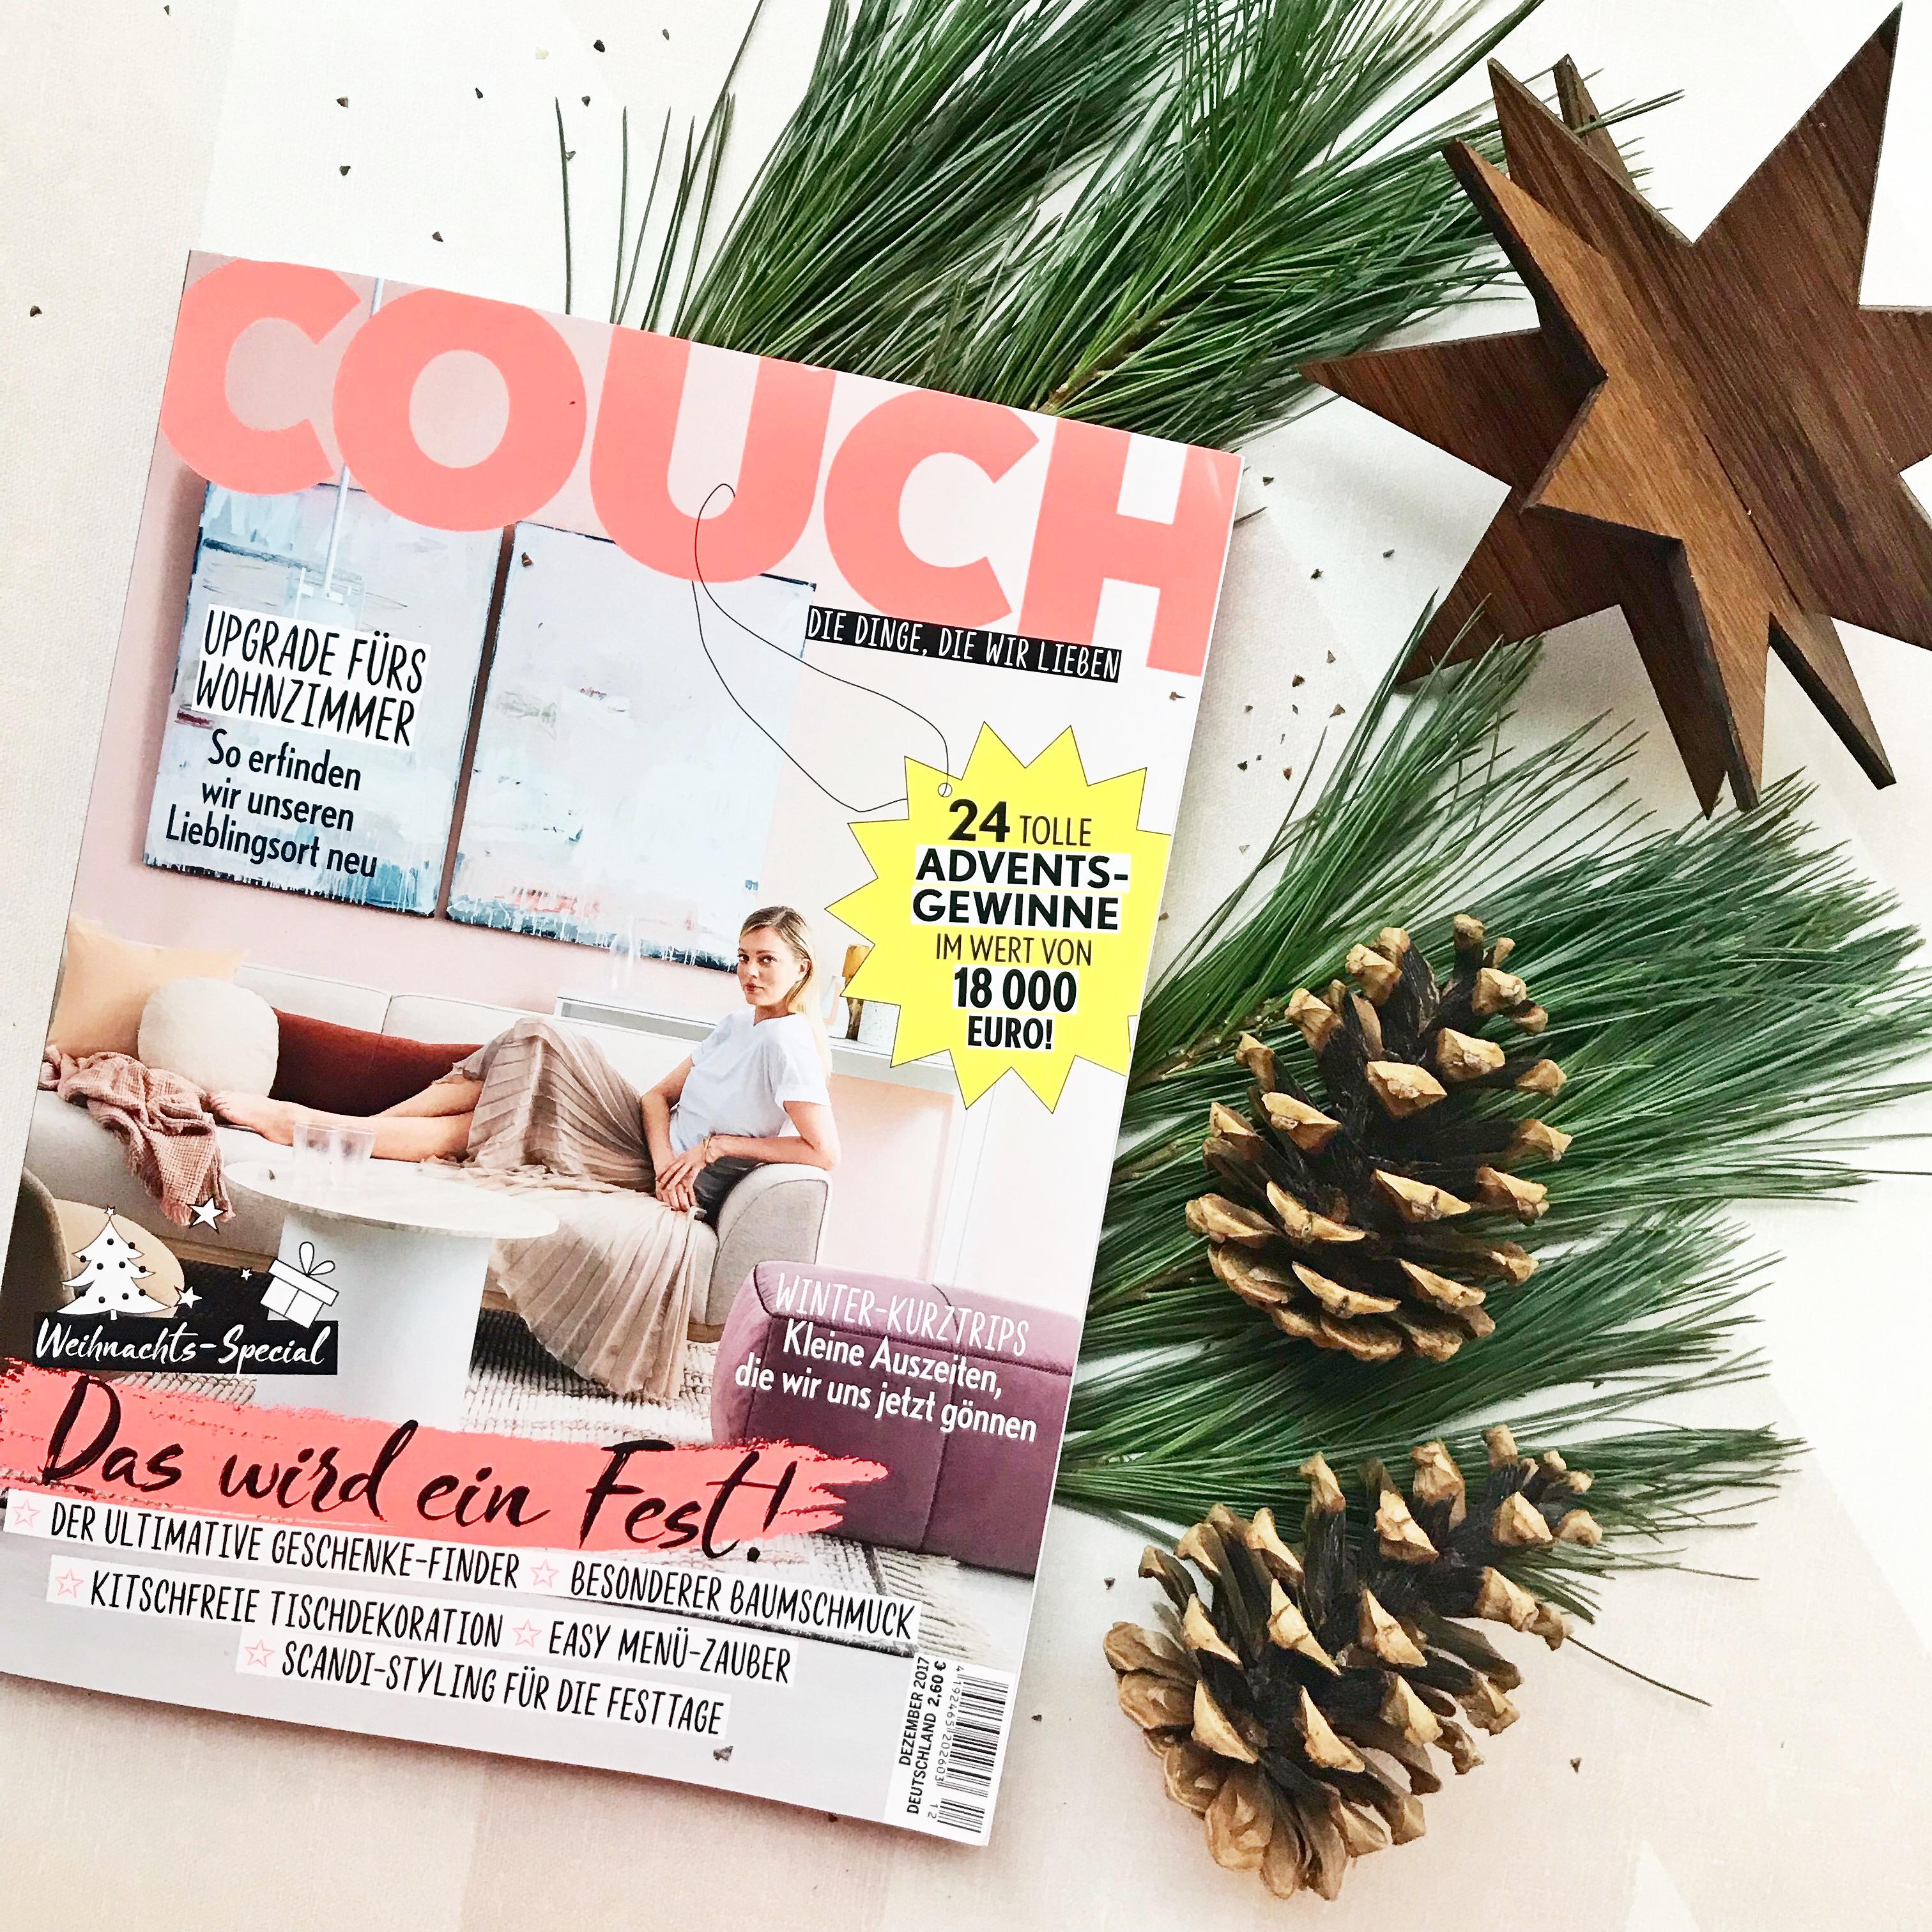 Ab heute am Kiosk: Die neue COUCH mit großem Weihnachts-Special! 🎄 🌟
#couchmagazin #couchabo #weihnachtsdeko 